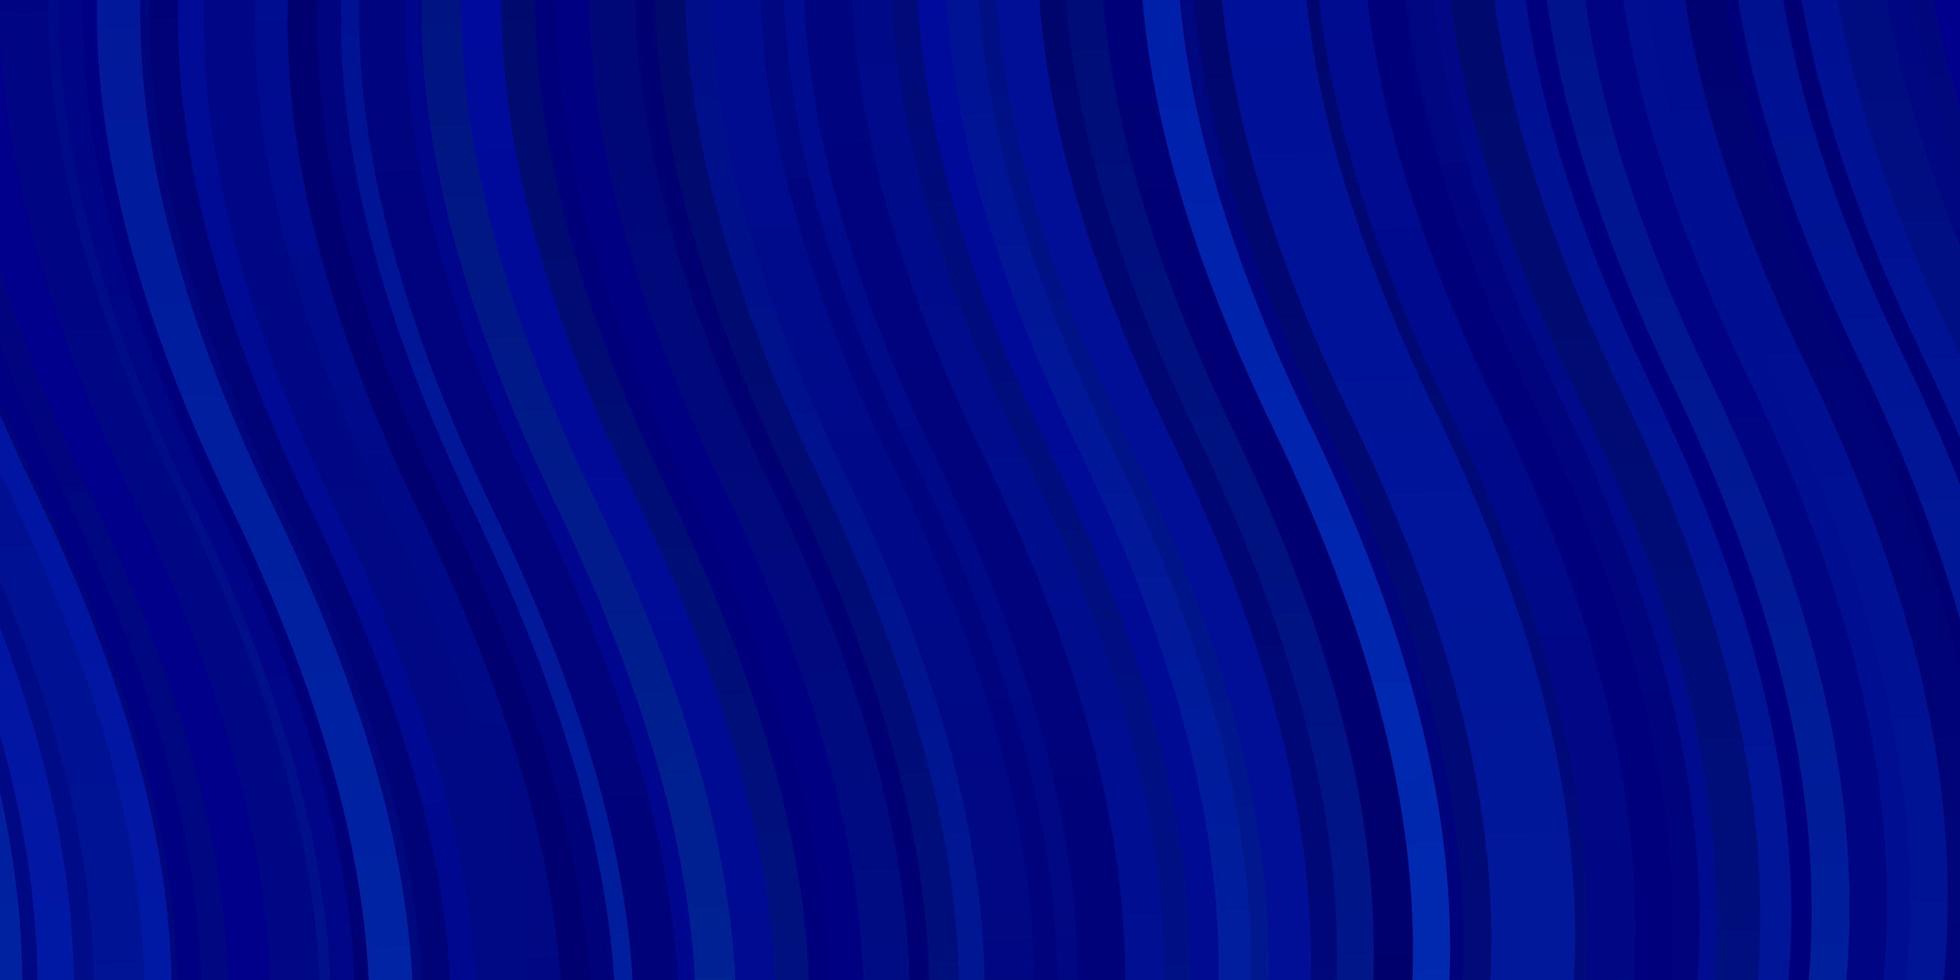 sfondo vettoriale azzurro con illustrazione ad arco circolare in stile astratto con gradiente curvo miglior design per i tuoi poster banner